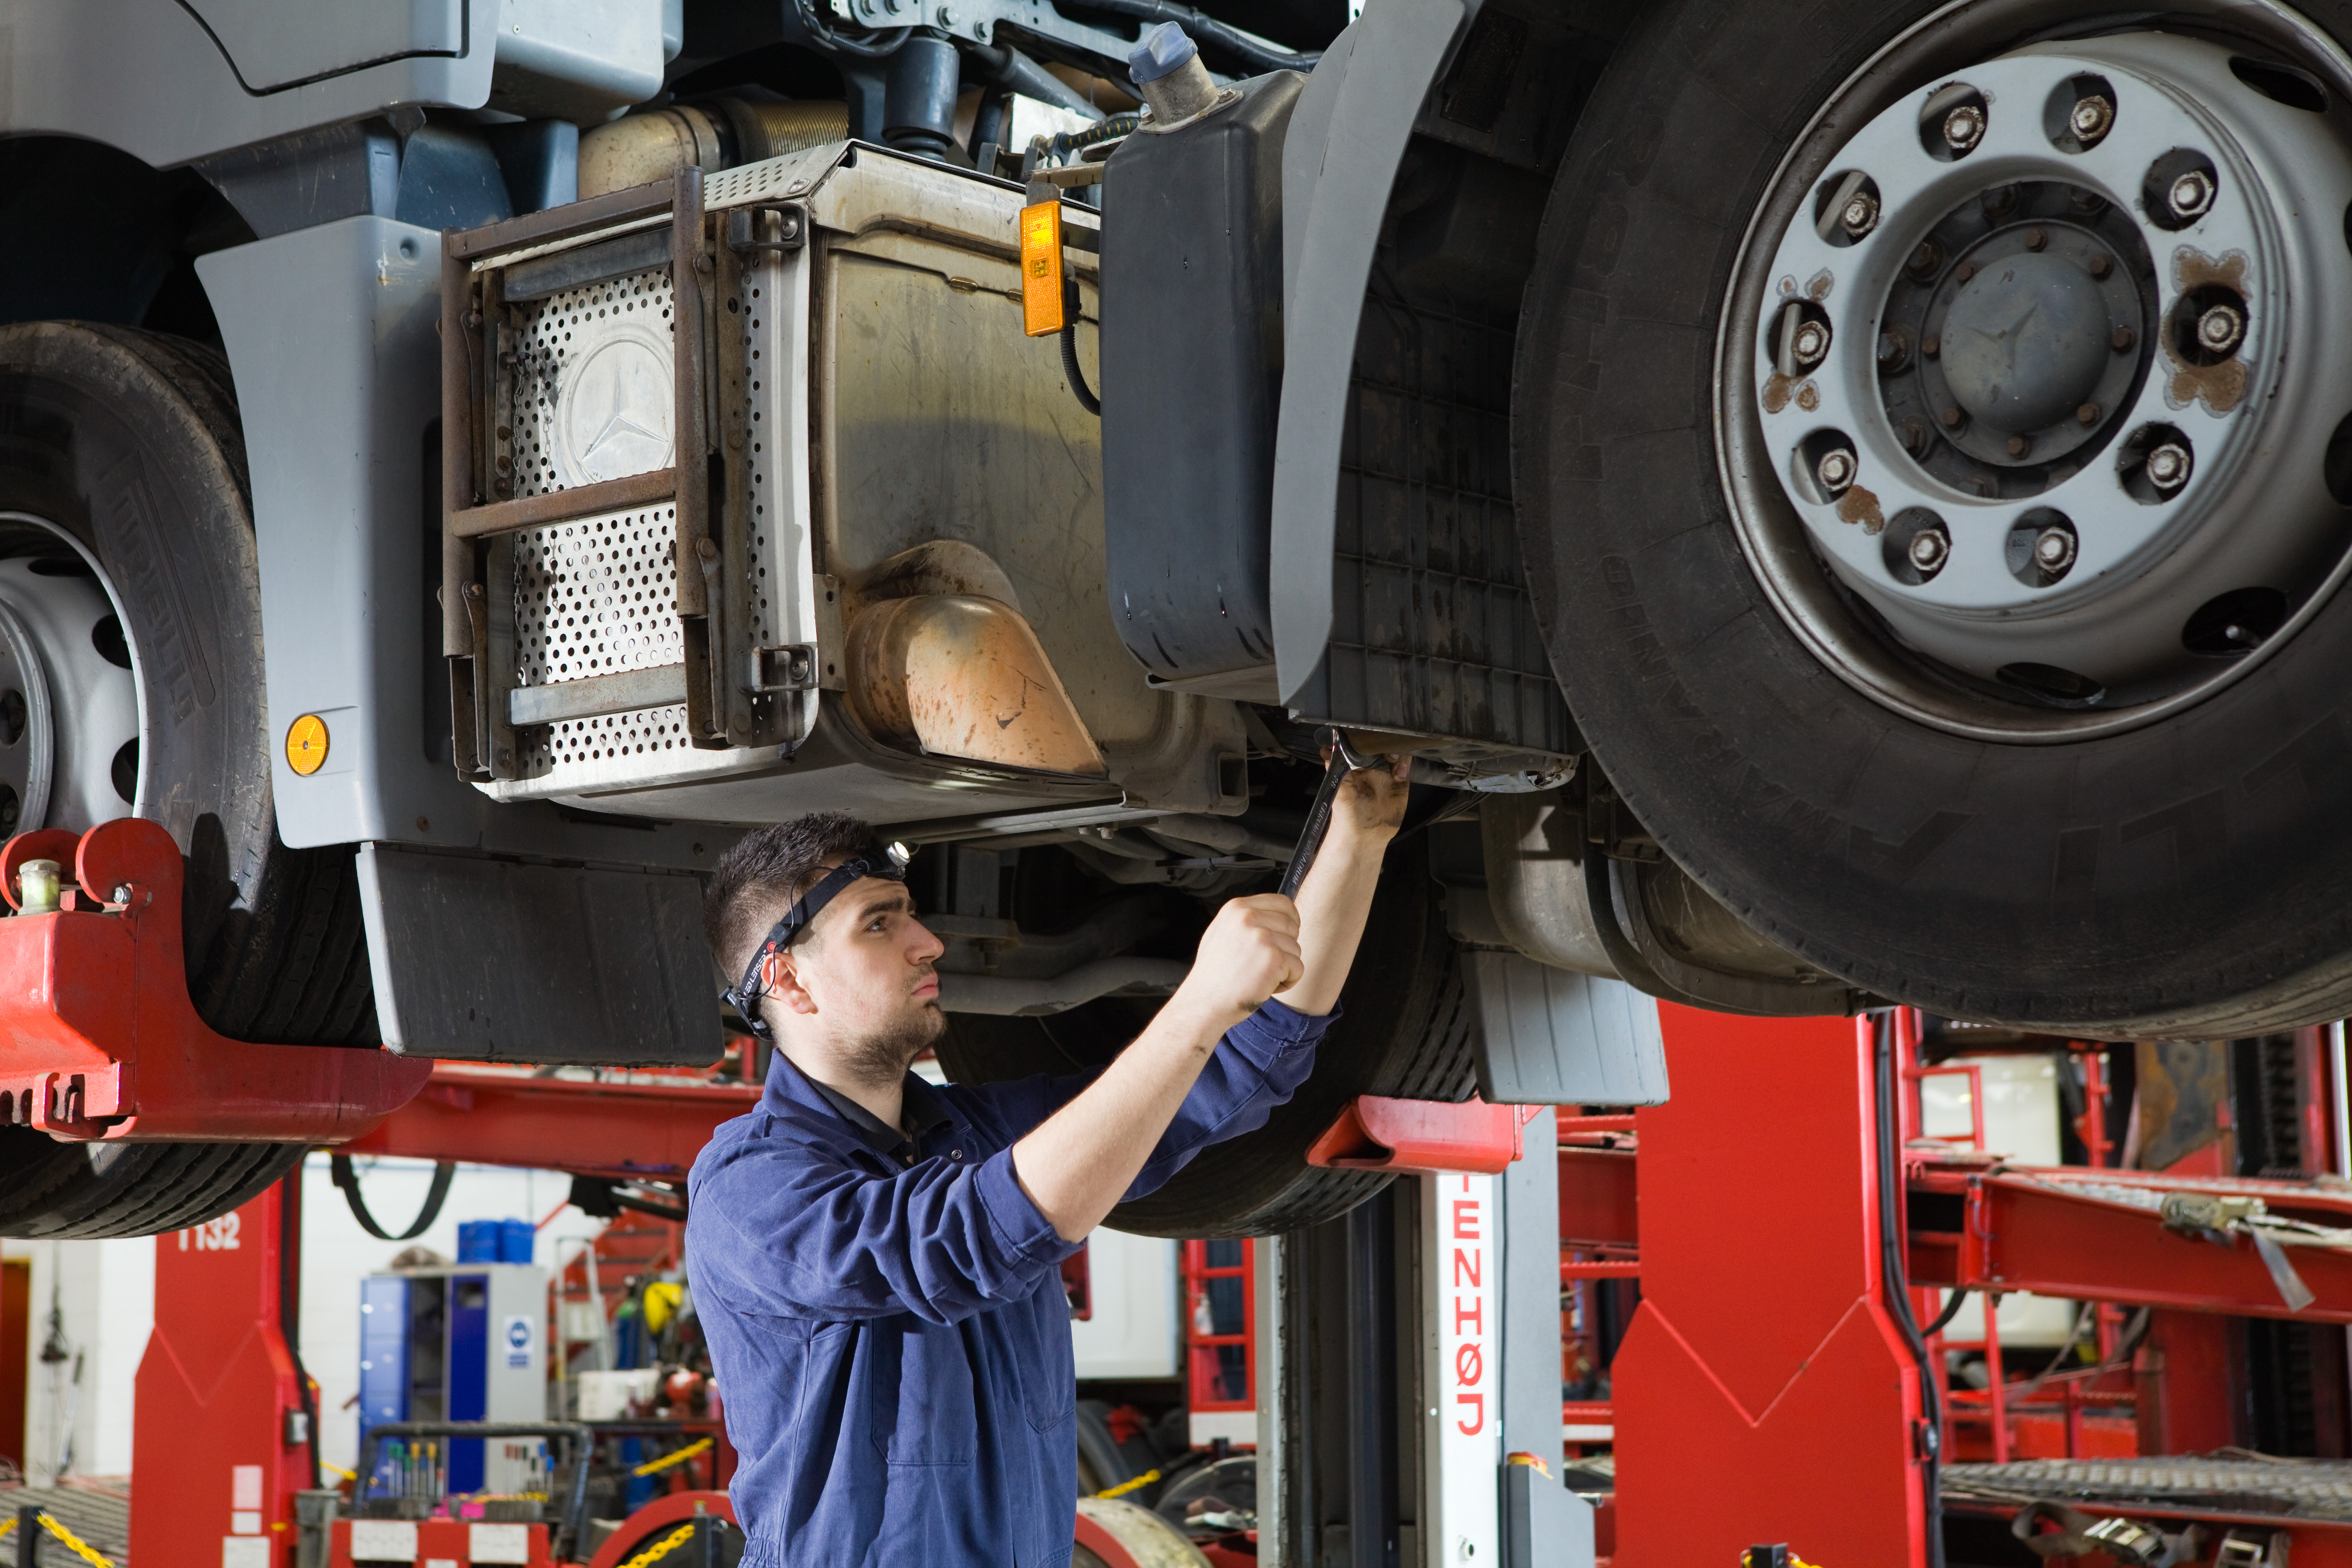 آموزش تعمیرات خودروهای سنگین کامیون  و اتوبوس در آموزشگاه فنی و حرفه ای پیشتازان صنعت خودروهای دیزل